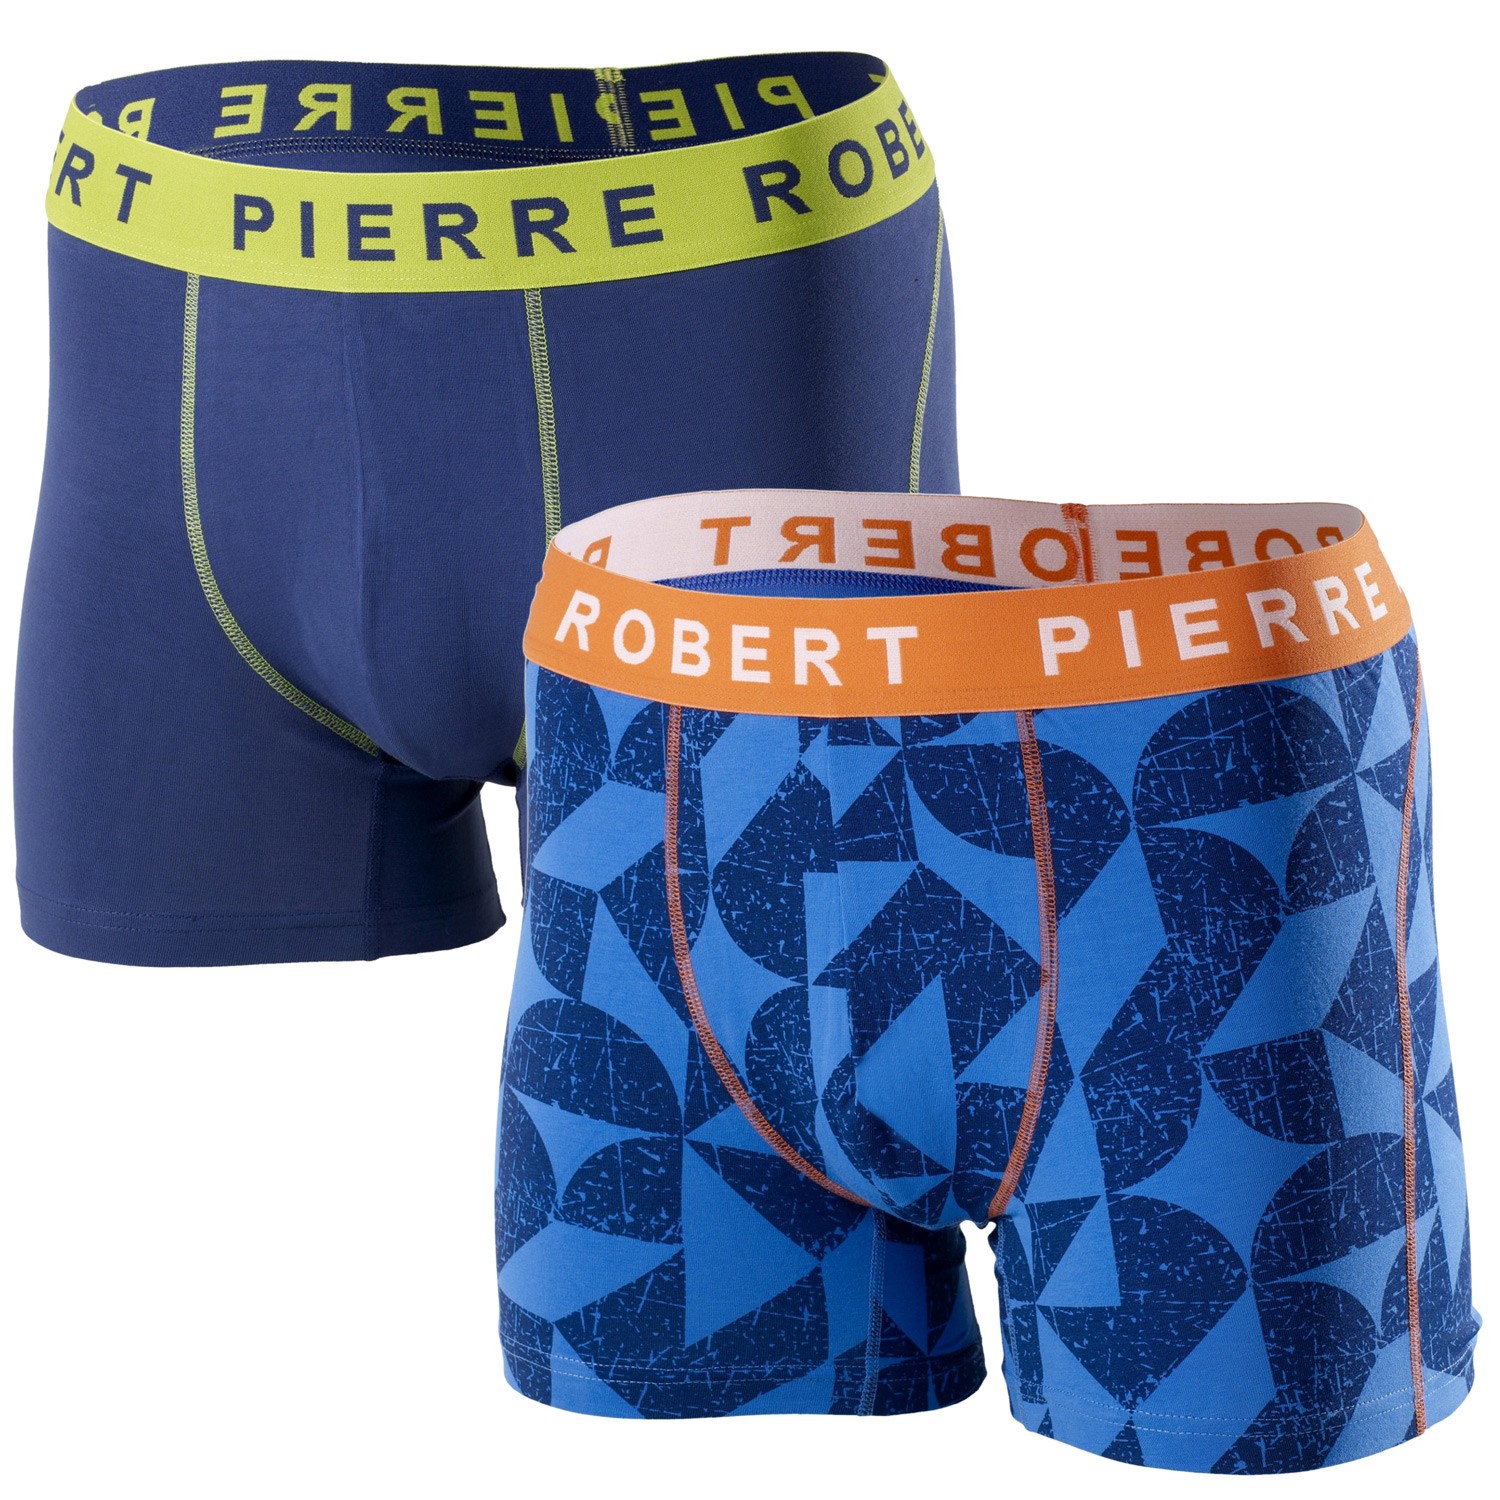 Pierre Robert For Men Cotton Boxers Blue Pattern